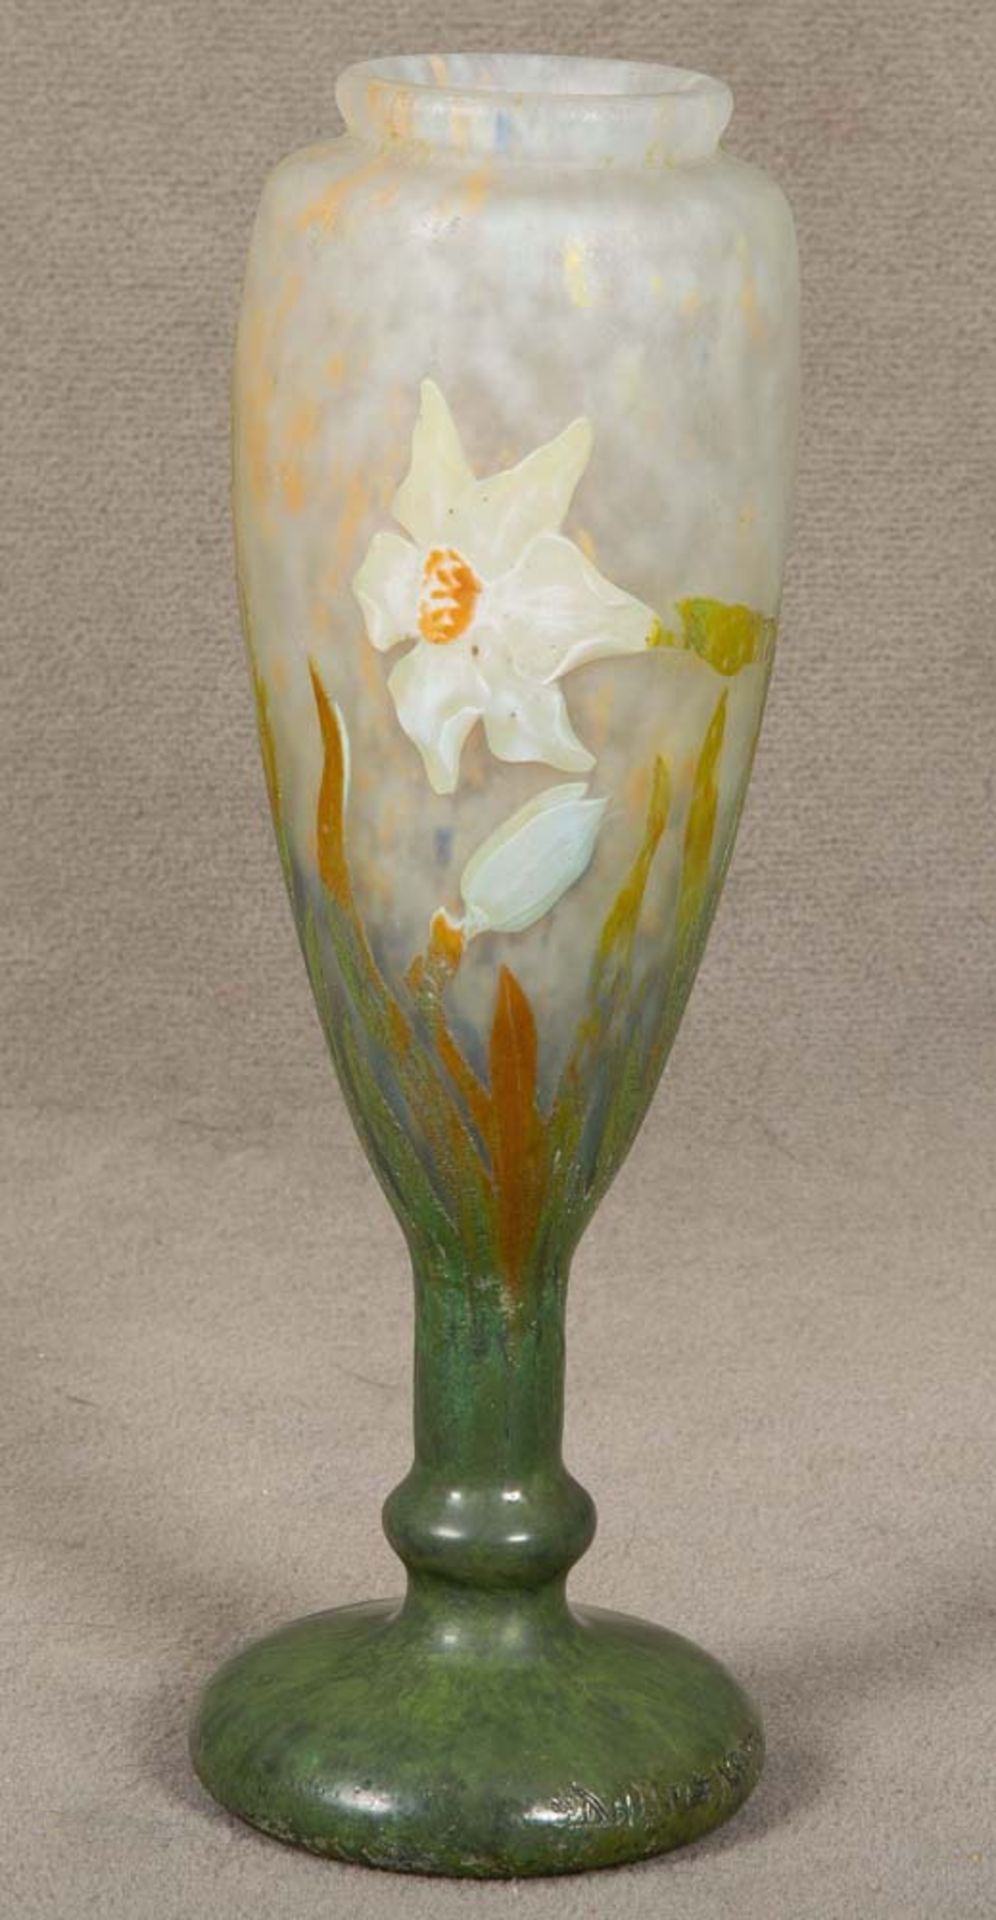 Jugendstil-Vase. Daum Frères & Cie, Verreries de Nancy um 1900. Farbloses Glas, farbig überfangen,